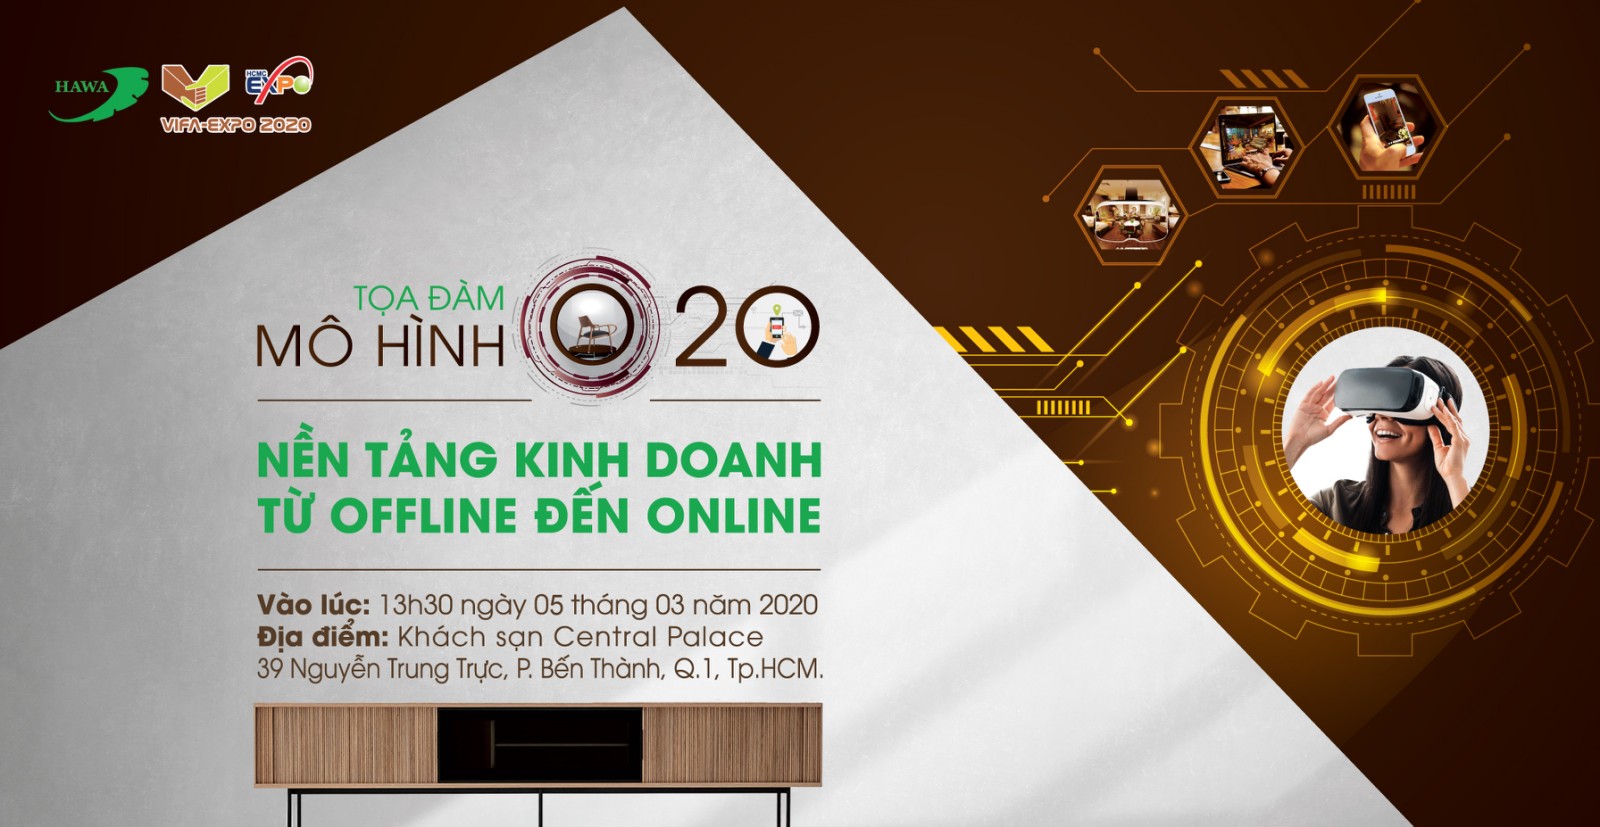 Mô hình bán lẻ offline to online trên thế giới đang dần hình thành tại  Việt Nam  Nhịp sống kinh tế Việt Nam  Thế giới